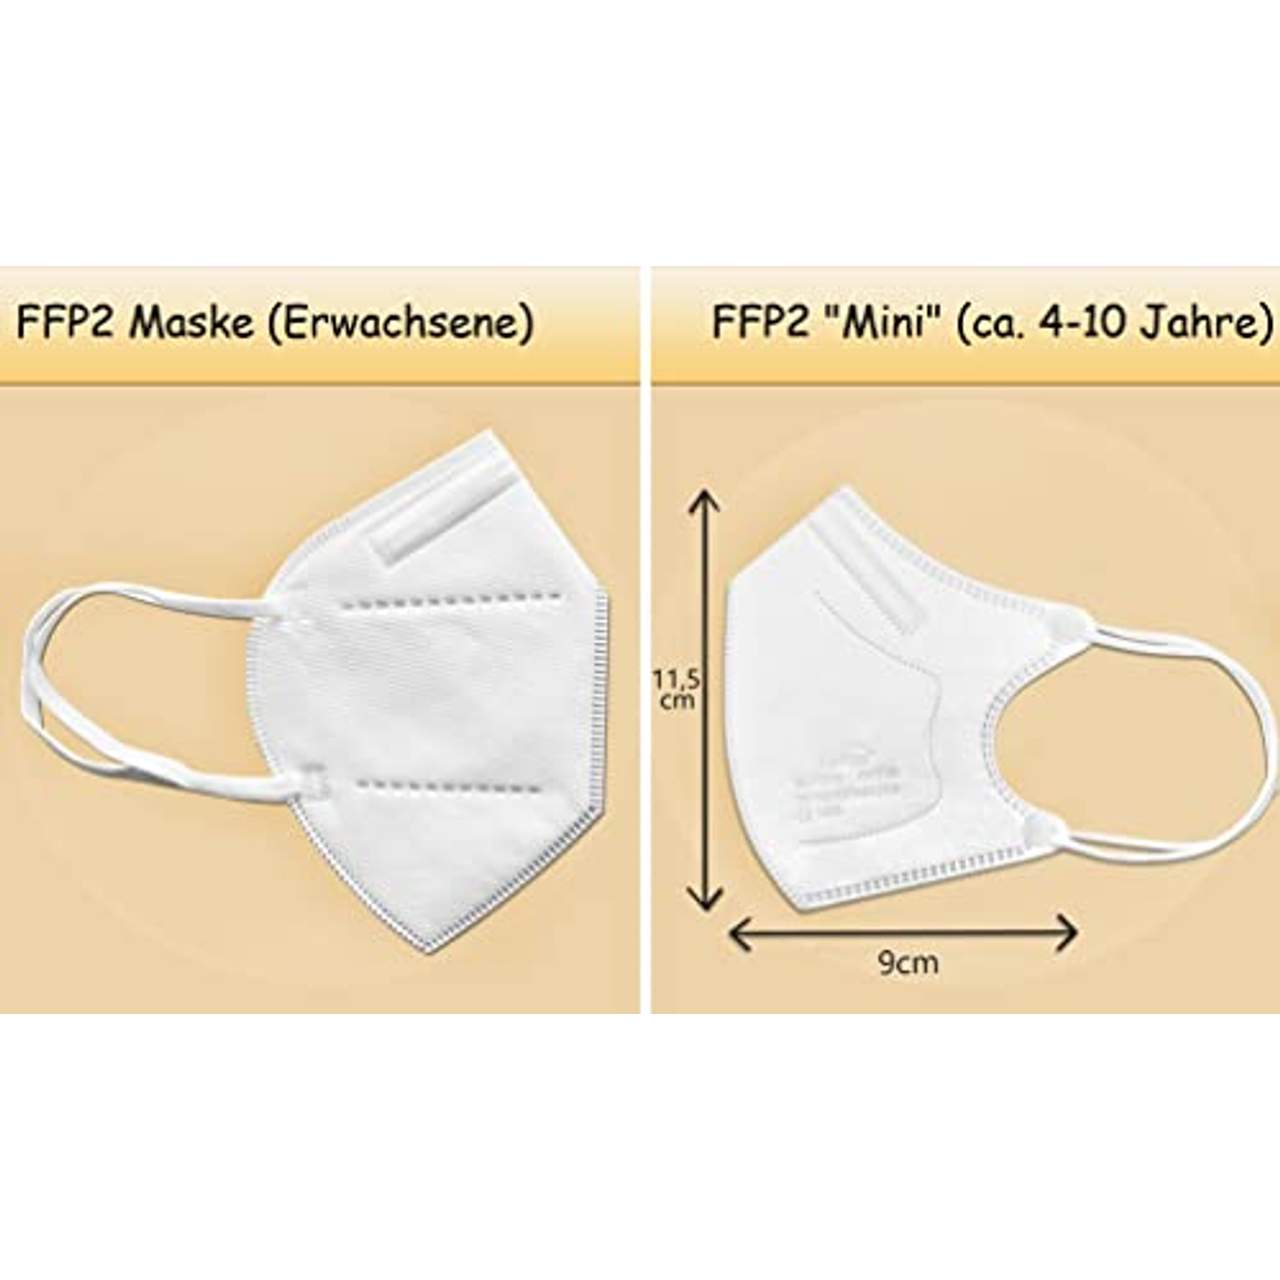 Frentree 10x Mini FFP2 Masken in kleiner Größe